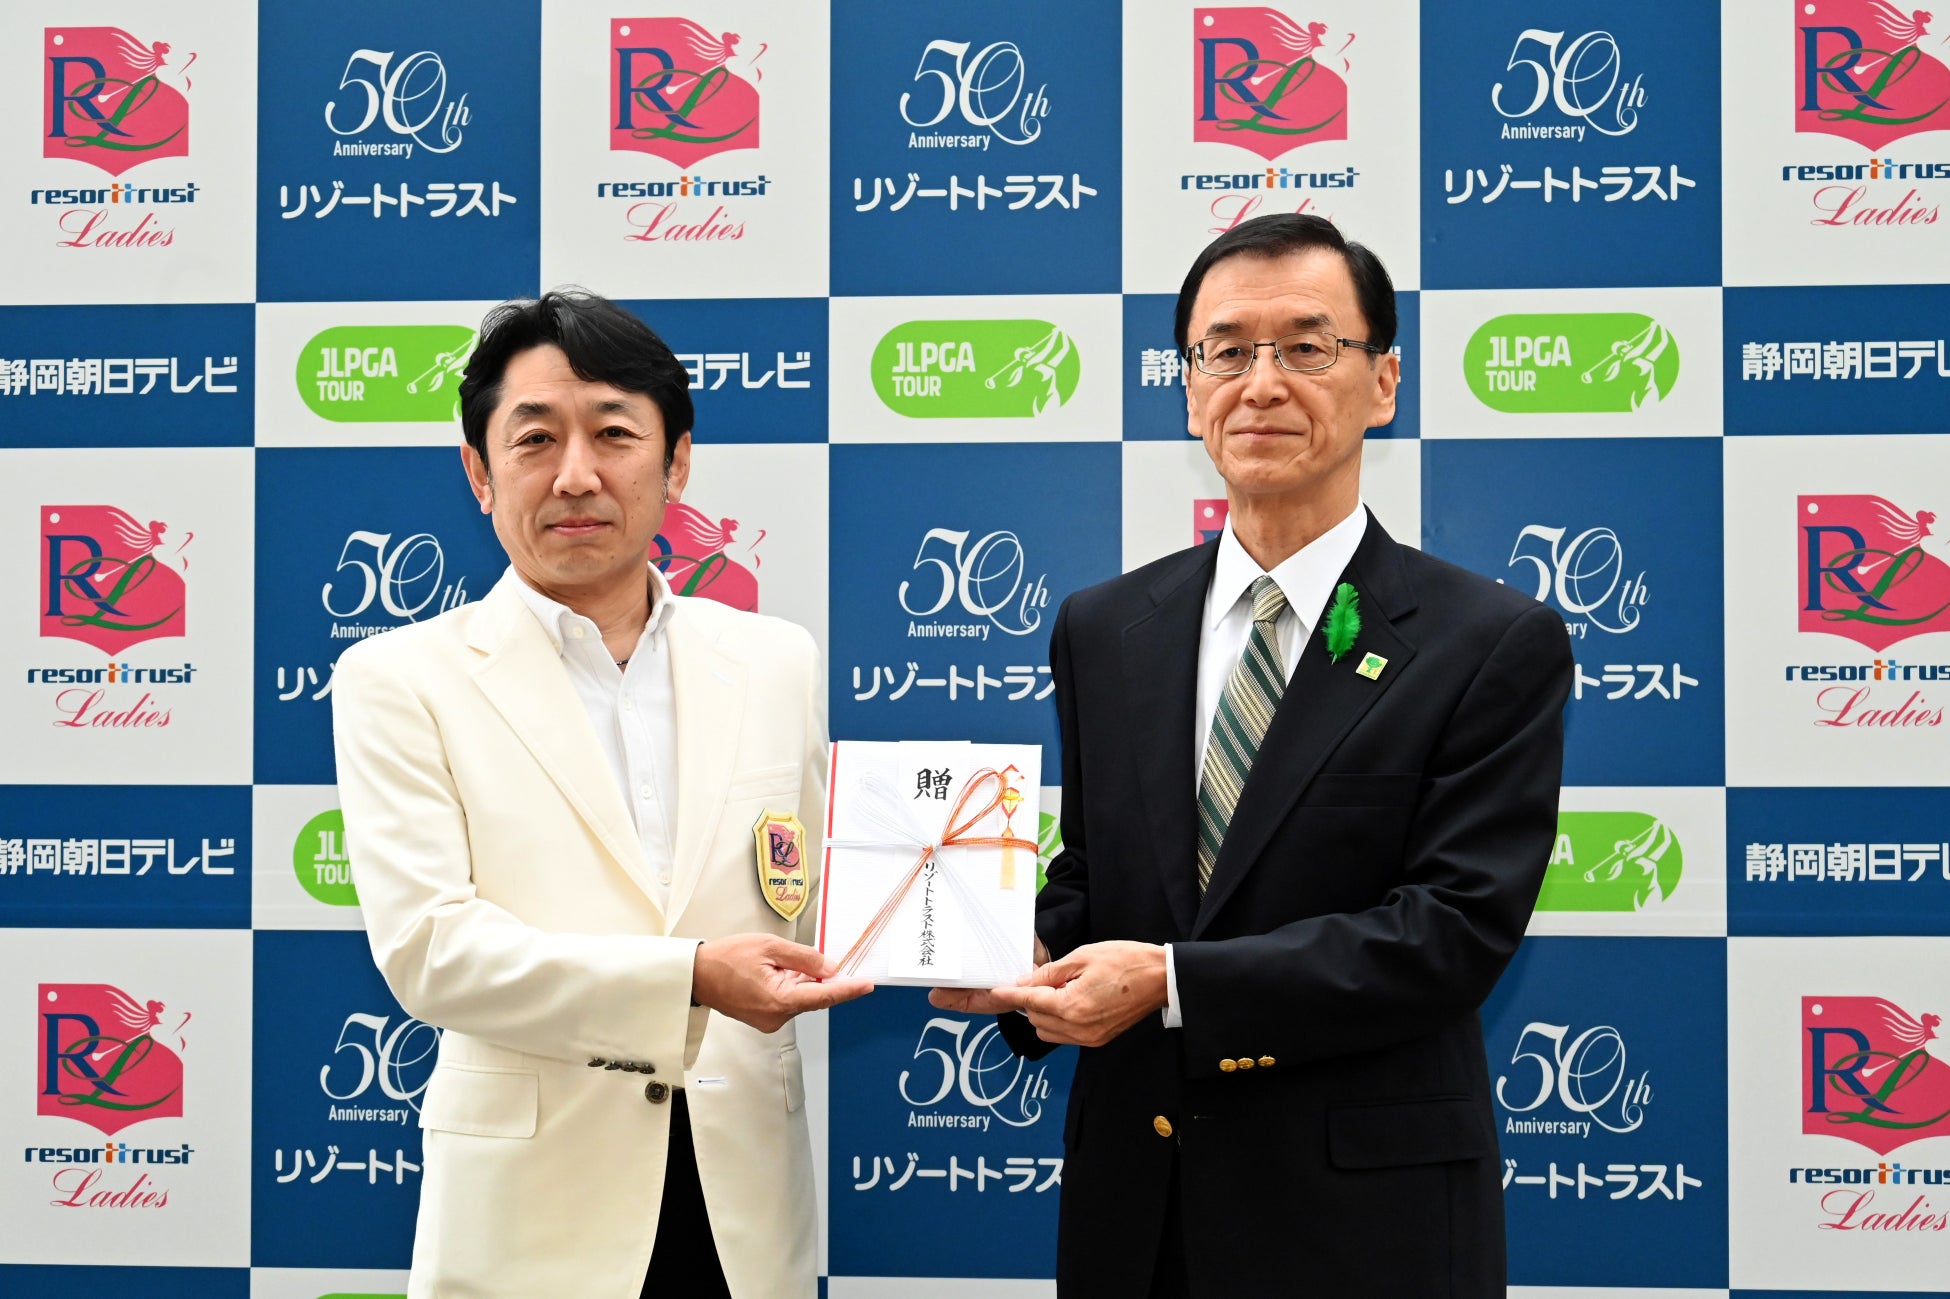 全米シェアNo.1の皮ふ保護バーム・ Body Glide®(ボディーグライド)の日本オフィシャルサイトが、6月1日(木)にグランドオープン！